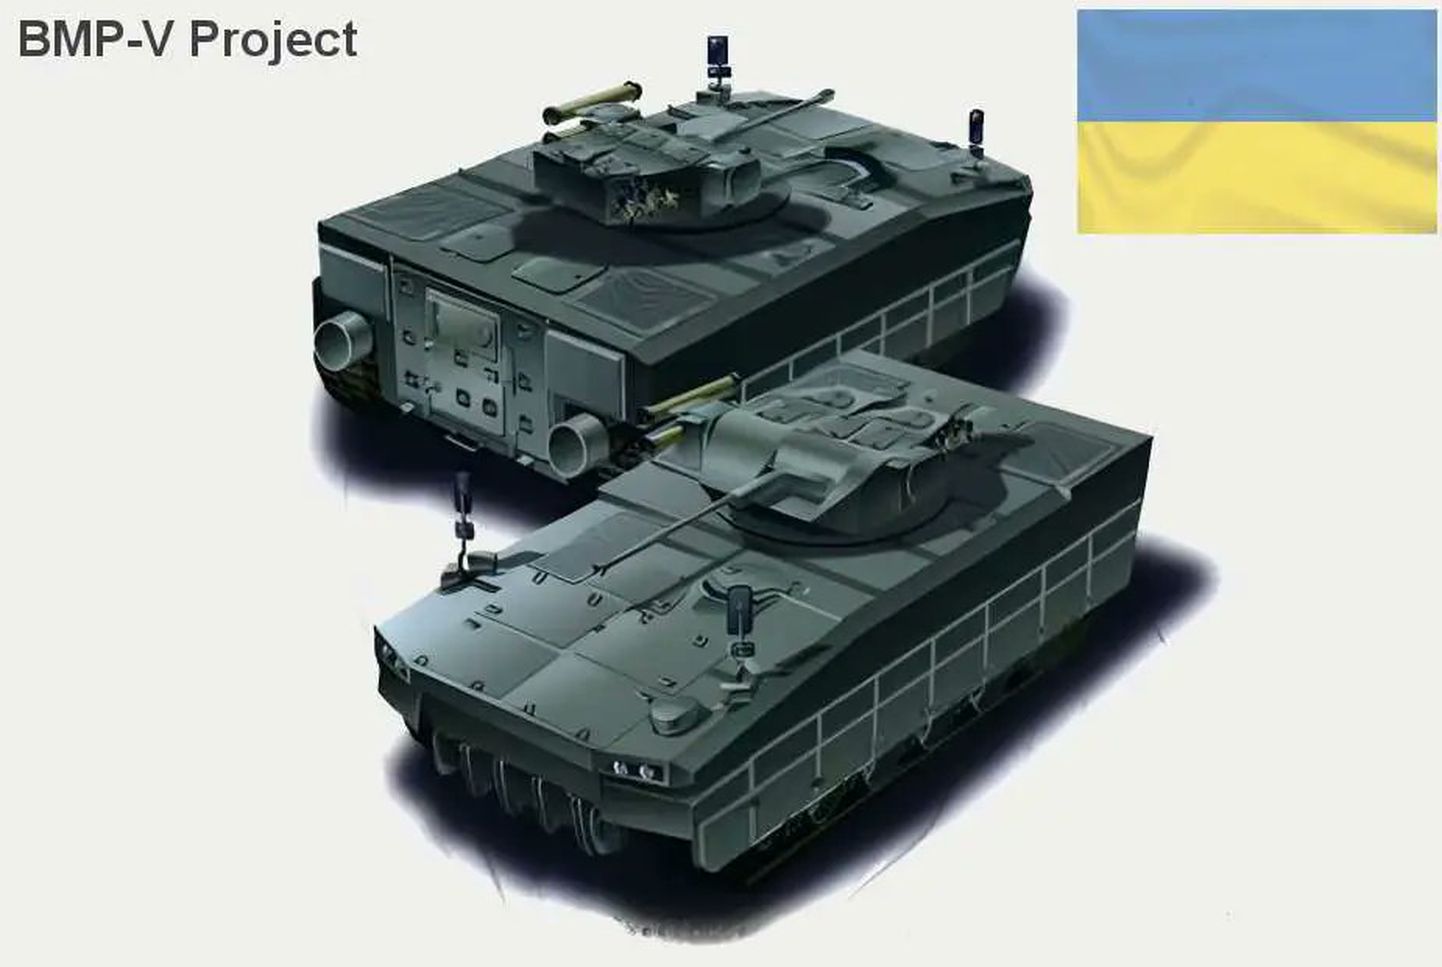 Ukrainlaste arvates on aeg edasi minna ja nõukogude lahingutehnika renoveerimise asemel ise moodsaid sõjamasinaid tootma hakata. BMP-V on üks sellistest, mis loodetakse kiiresti tootmisse saada ning hakata kasutama juba praeguse sõja ajal Venemaa sissetungi tõrjumiseks.